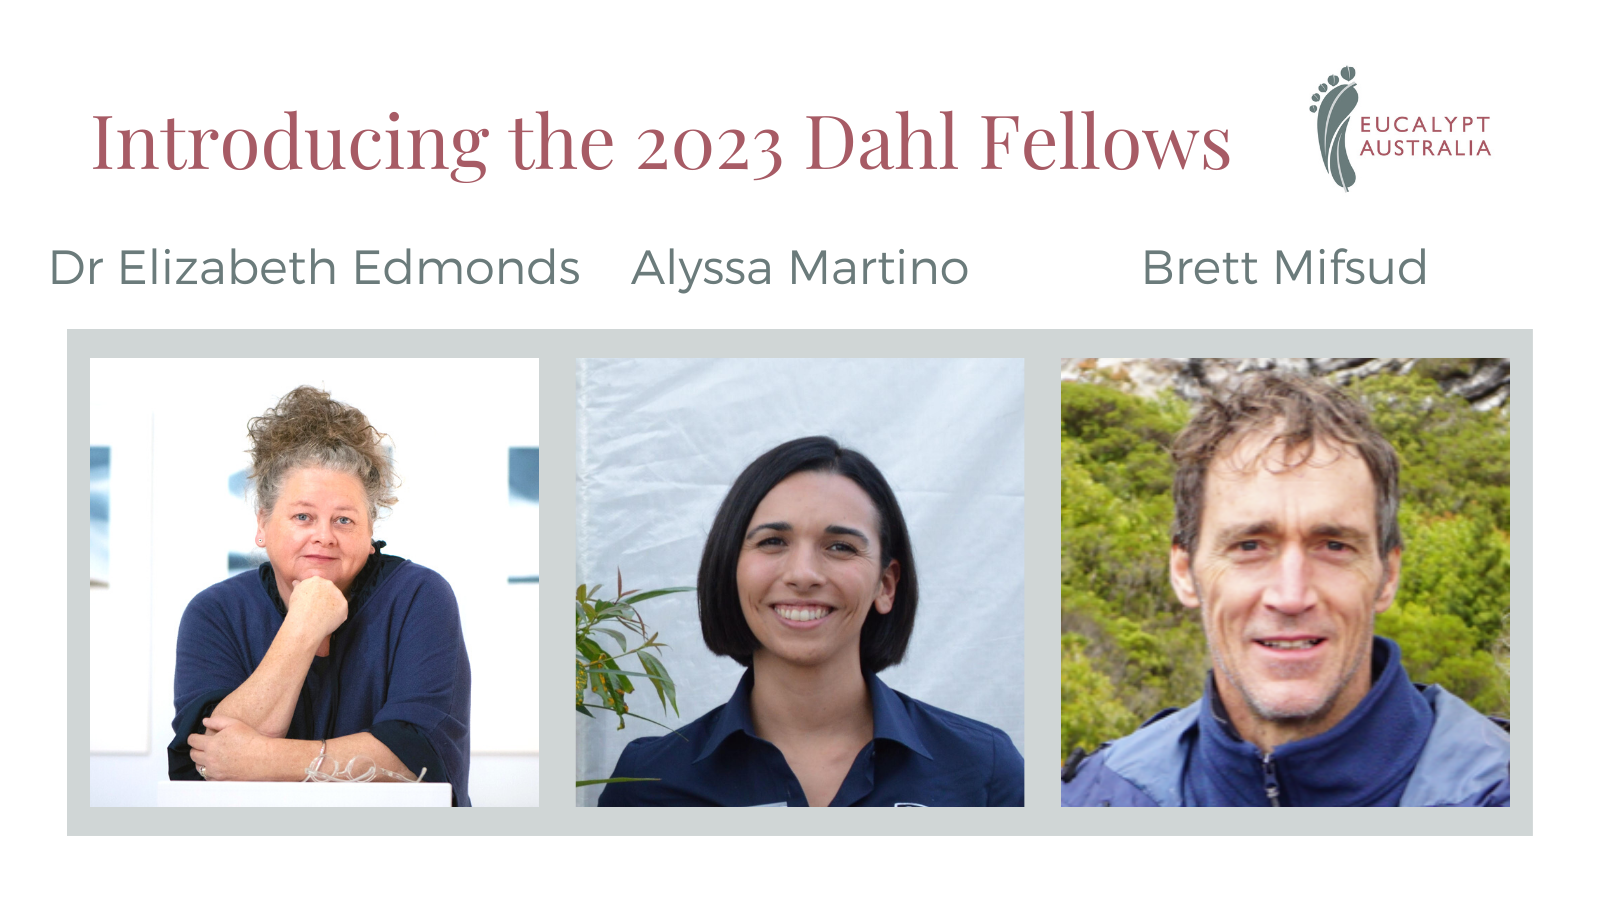 Congratulations to the 2023 Dahl Fellows